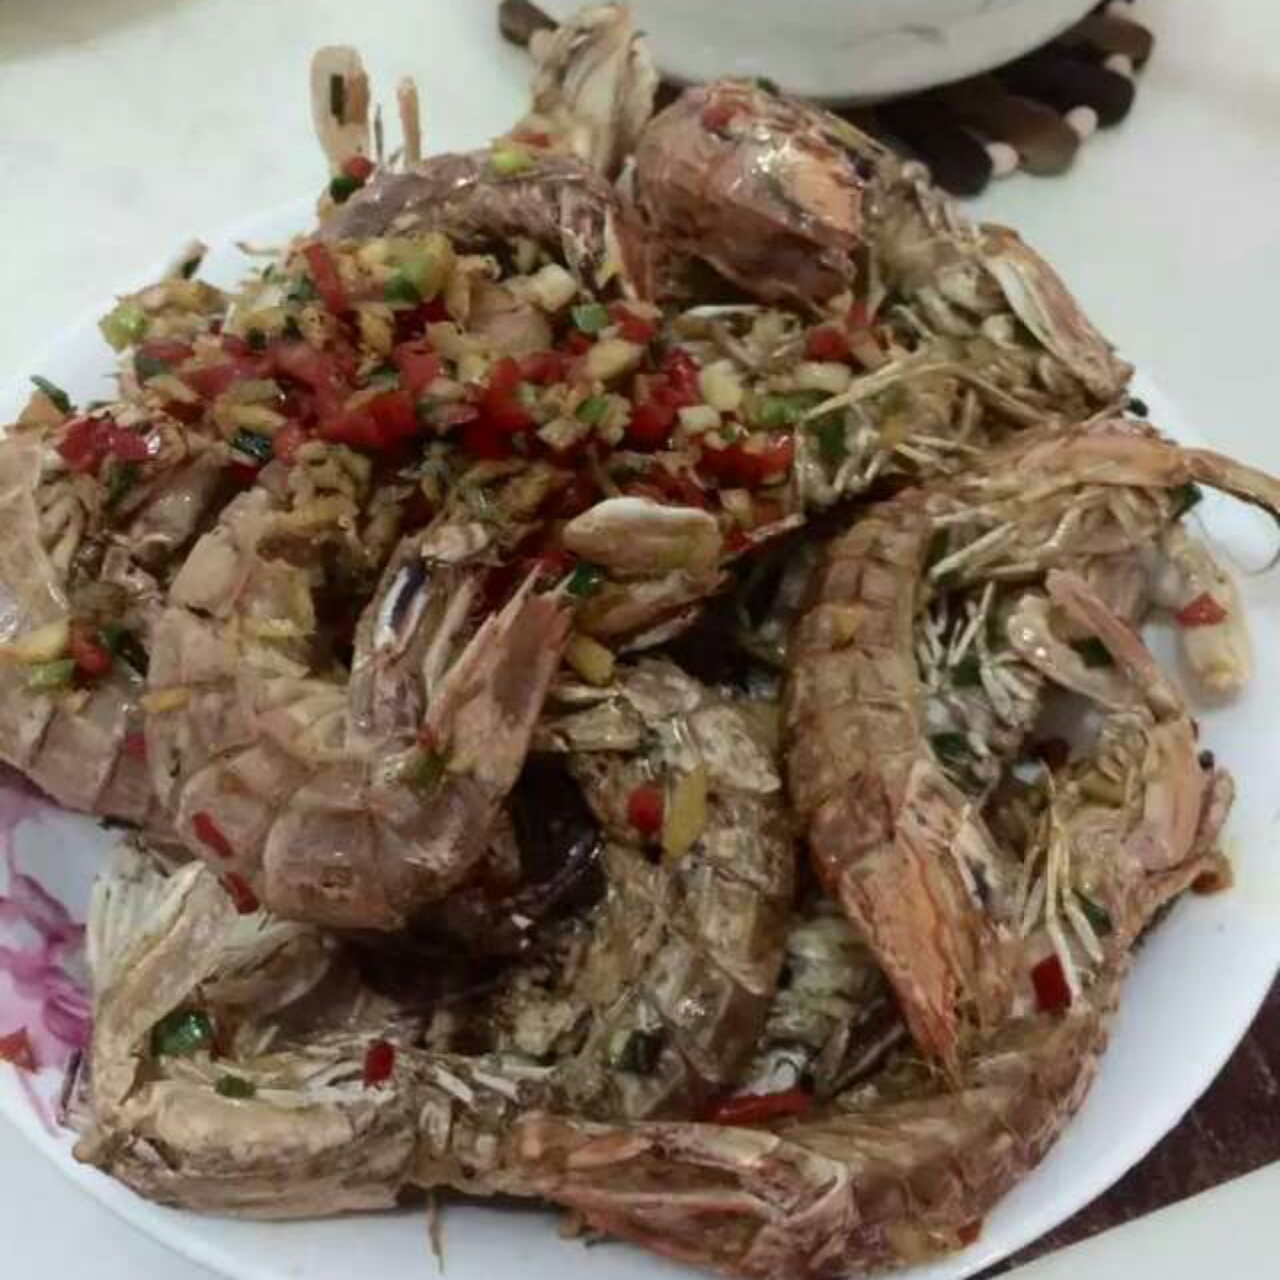 椒盐皮皮虾